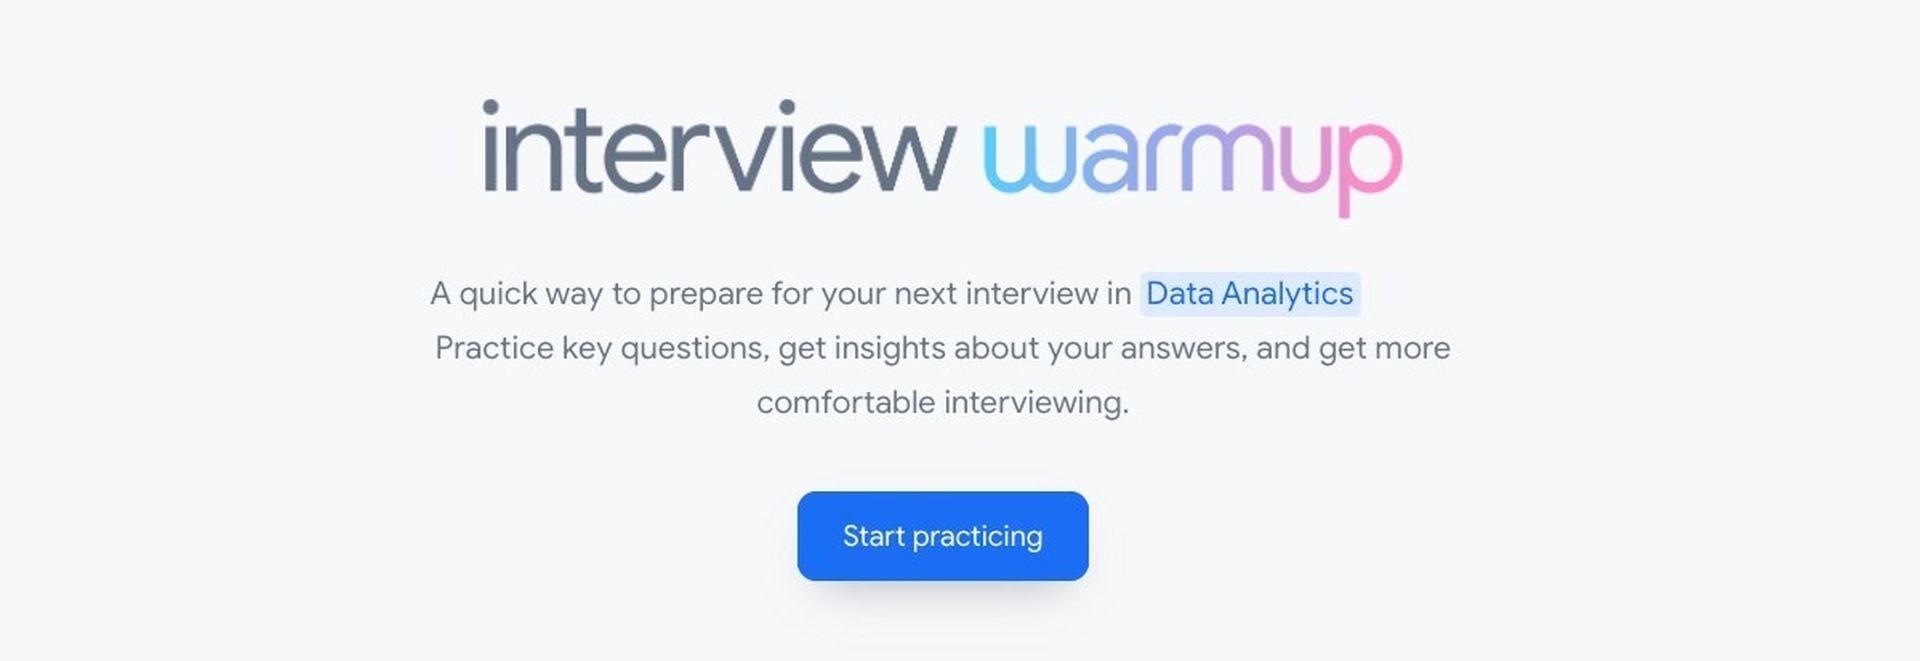 Si vous vous sentez nerveux avant un entretien d'embauche, le nouvel outil d'intelligence artificielle appelé Google Interview Warmup vous aidera à vous entraîner au préalable.  Google dispose désormais d'un outil pour aider les candidats à s'entraîner aux entretiens d'embauche.  Il est vrai que les entretiens d'embauche peuvent être stressants.  Vous pouvez vous entraîner et être mieux préparé avant de passer un entretien grâce au nouvel outil de Google.